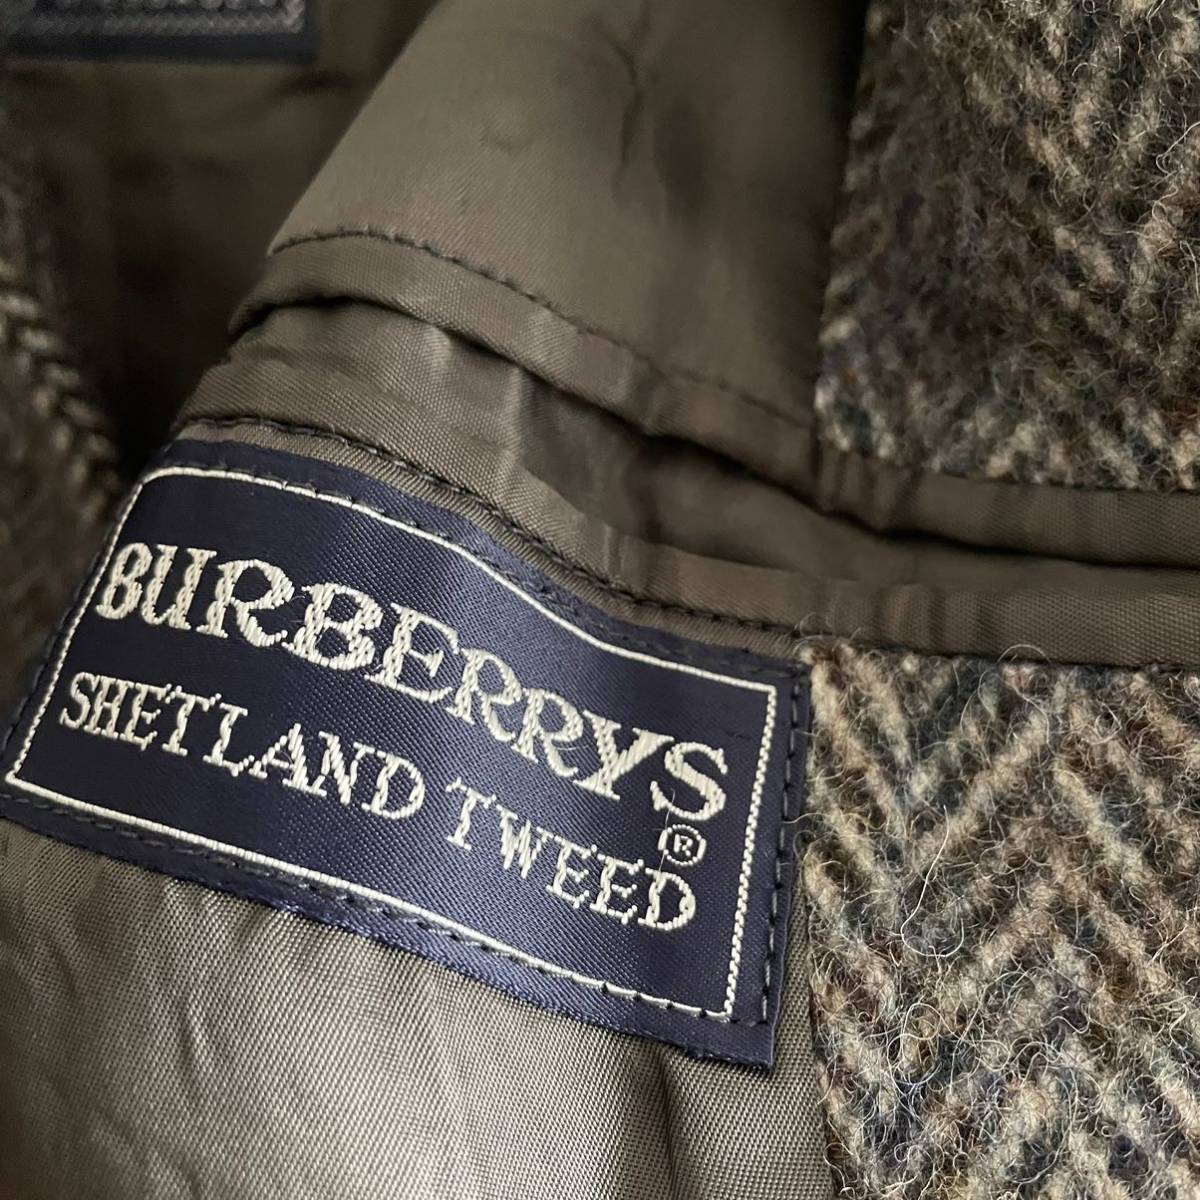 【一枚袖 同様】Burberry ロングコート サドルショルダー イングランド製 別注品 ツイード バーバリー